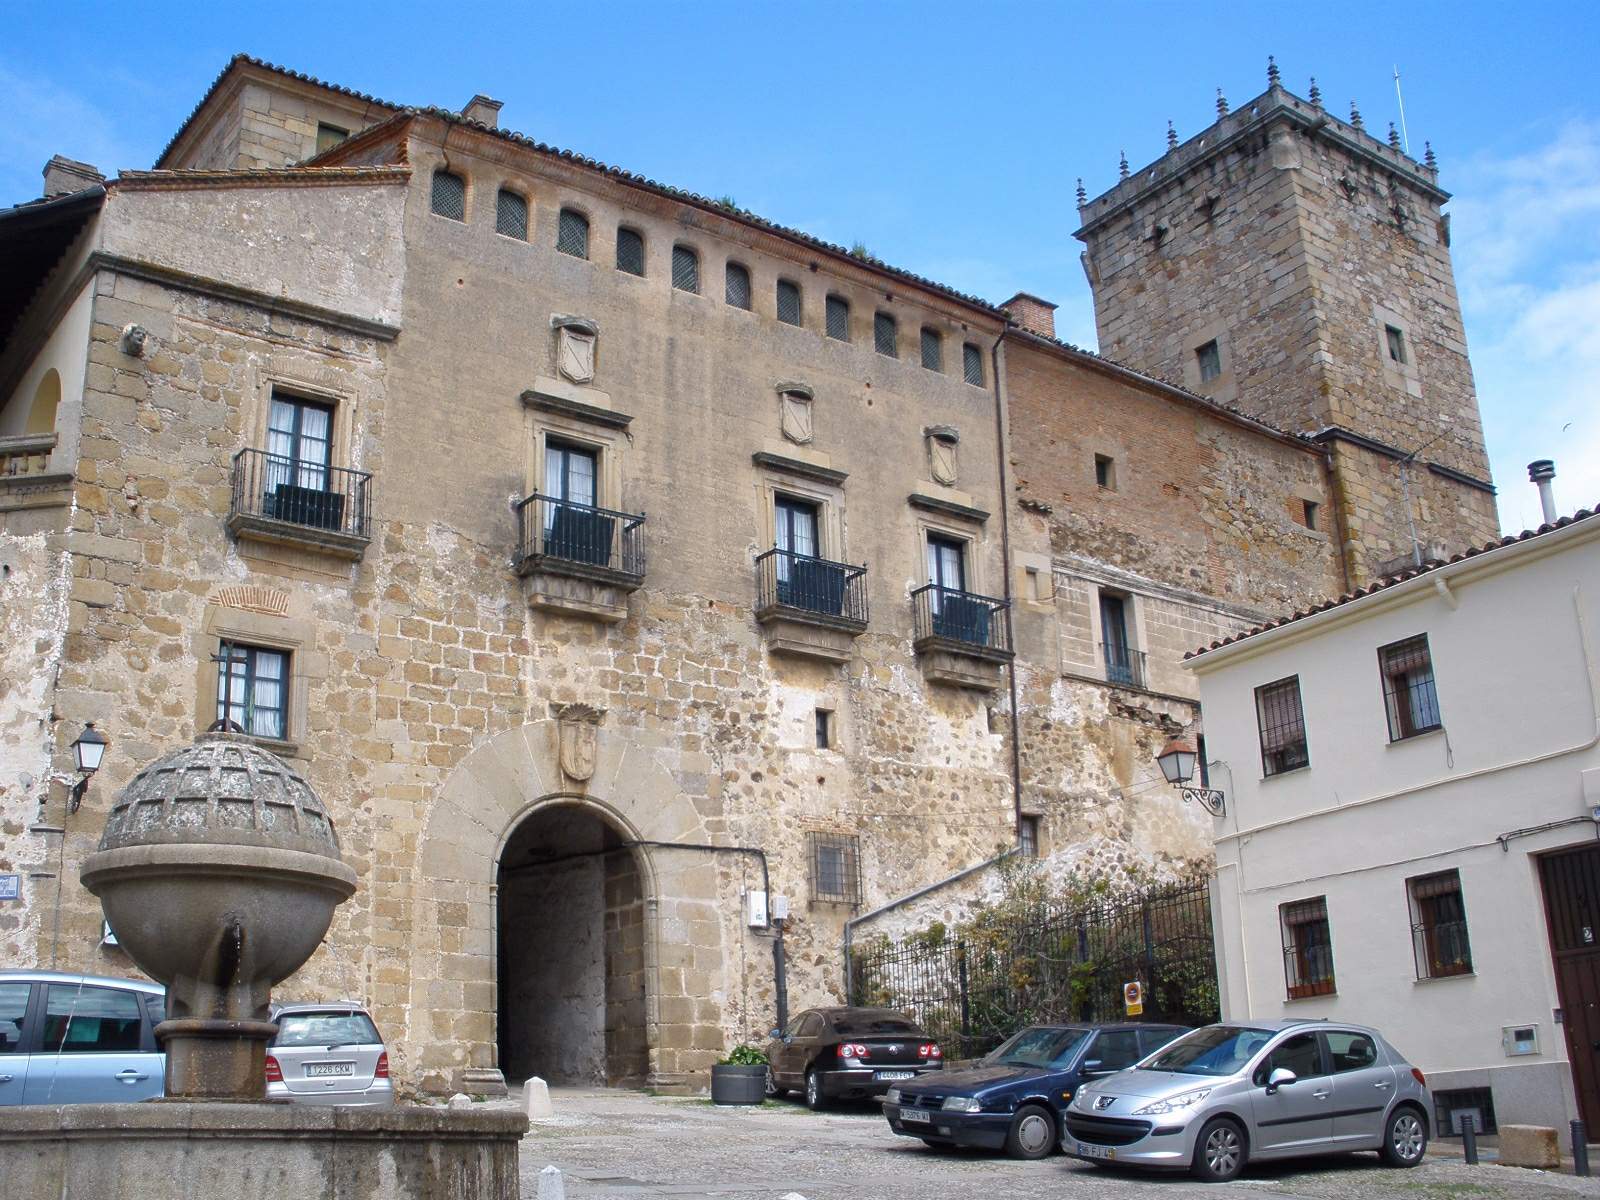 File:Plasencia - Palacio del Marques de Mirabel 1.jpg - Wikimedia Commons